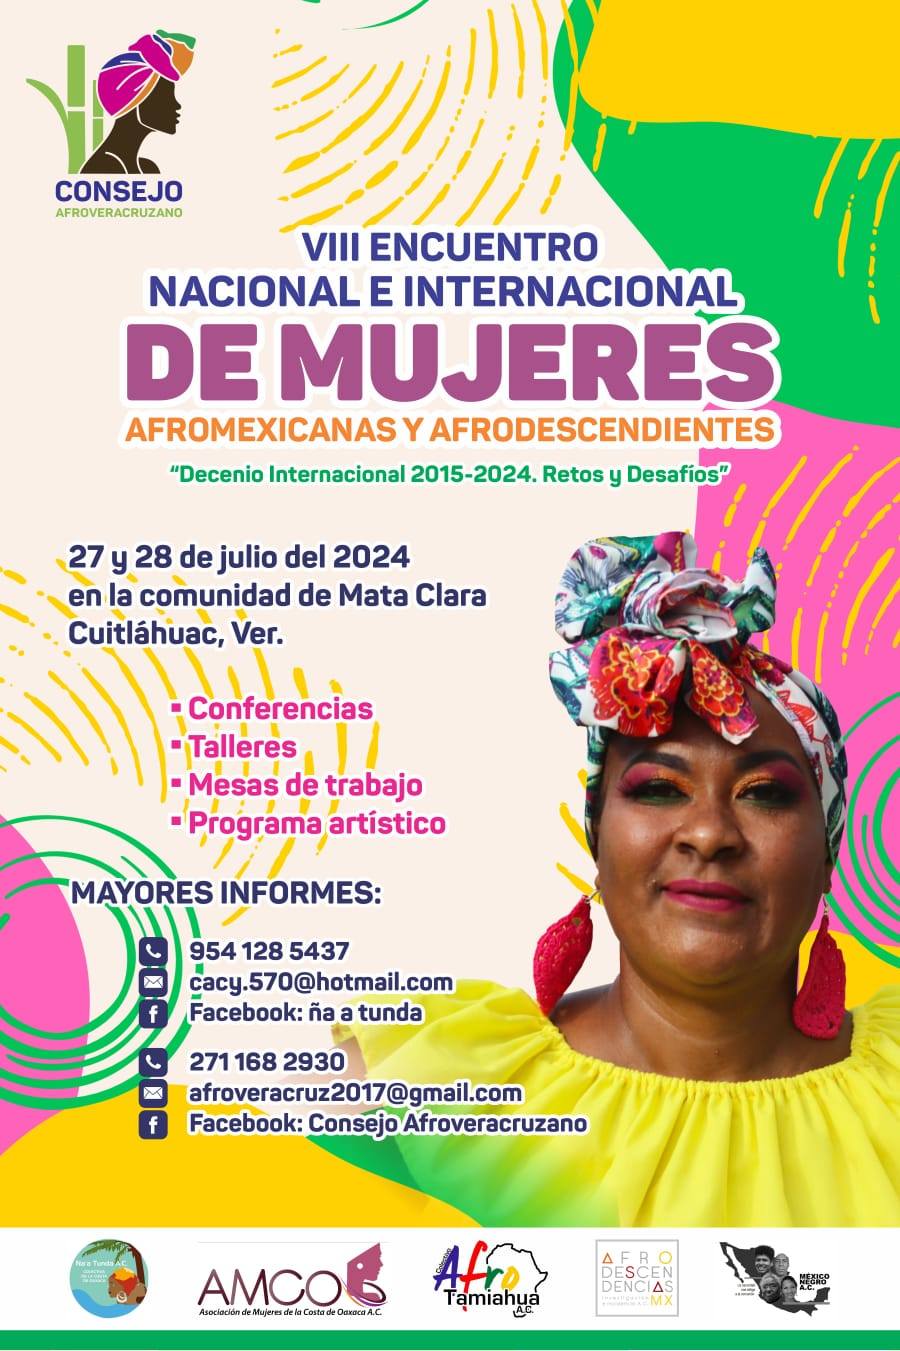 Invitación al VIII Encuentro Nacional e Internacional de Mujeres Afromexicanas y Afrodescendientes en Veracruz